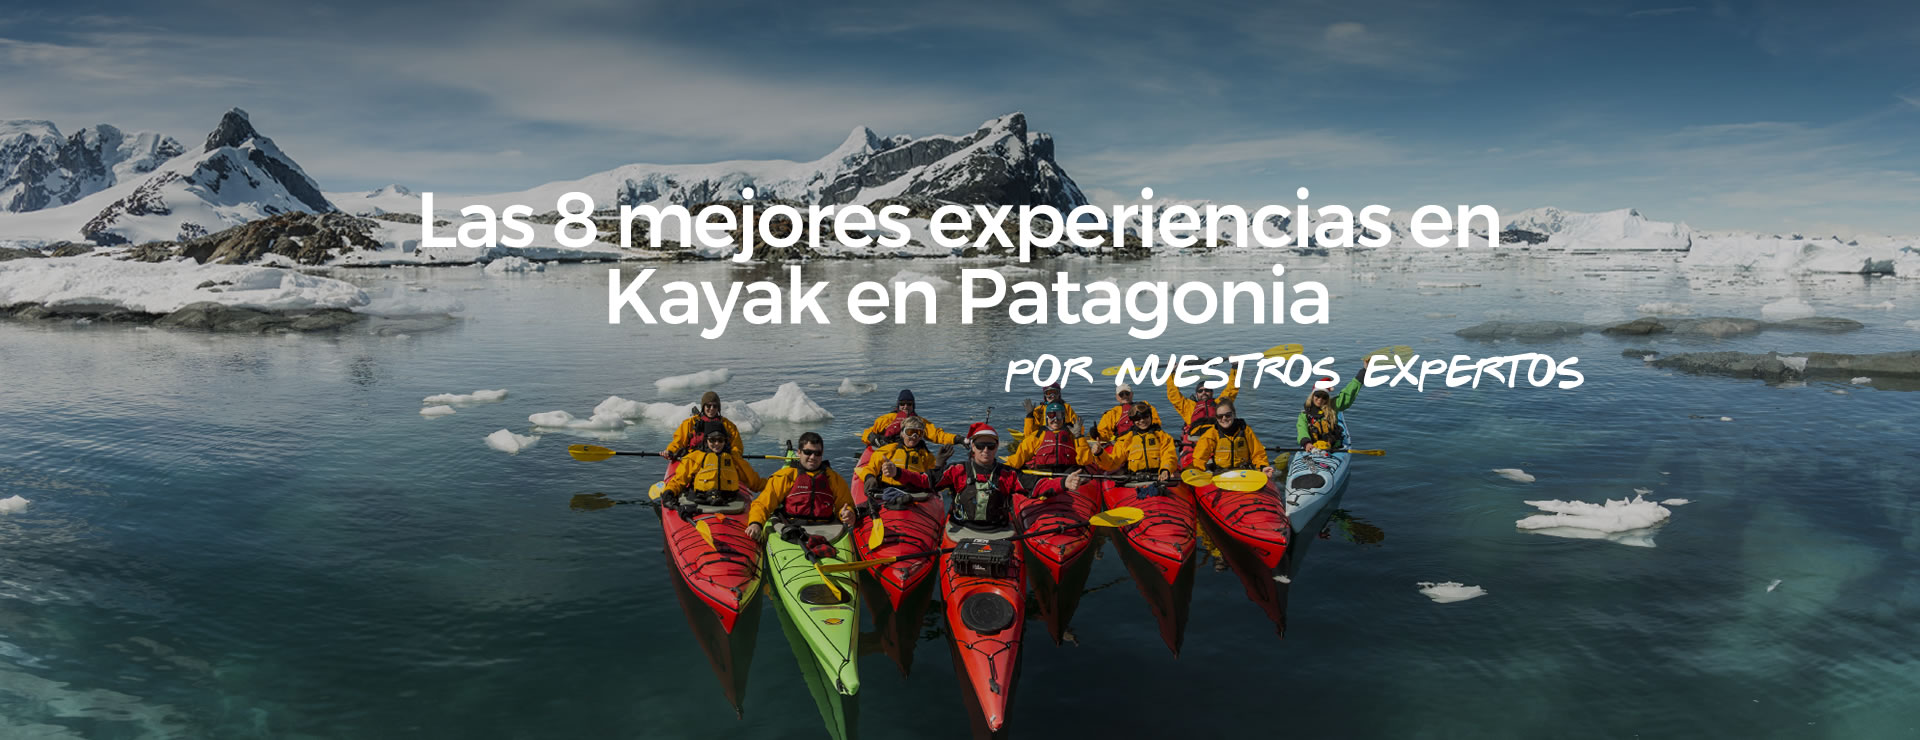 América del Sur está llena de lugares donde se puede admirar la belleza de la naturaleza remando; aquí está nuestra selección de las mejores experiencias que sugerimos para hacer kayak en la Patagonia, ya sea Argentina o Chile.